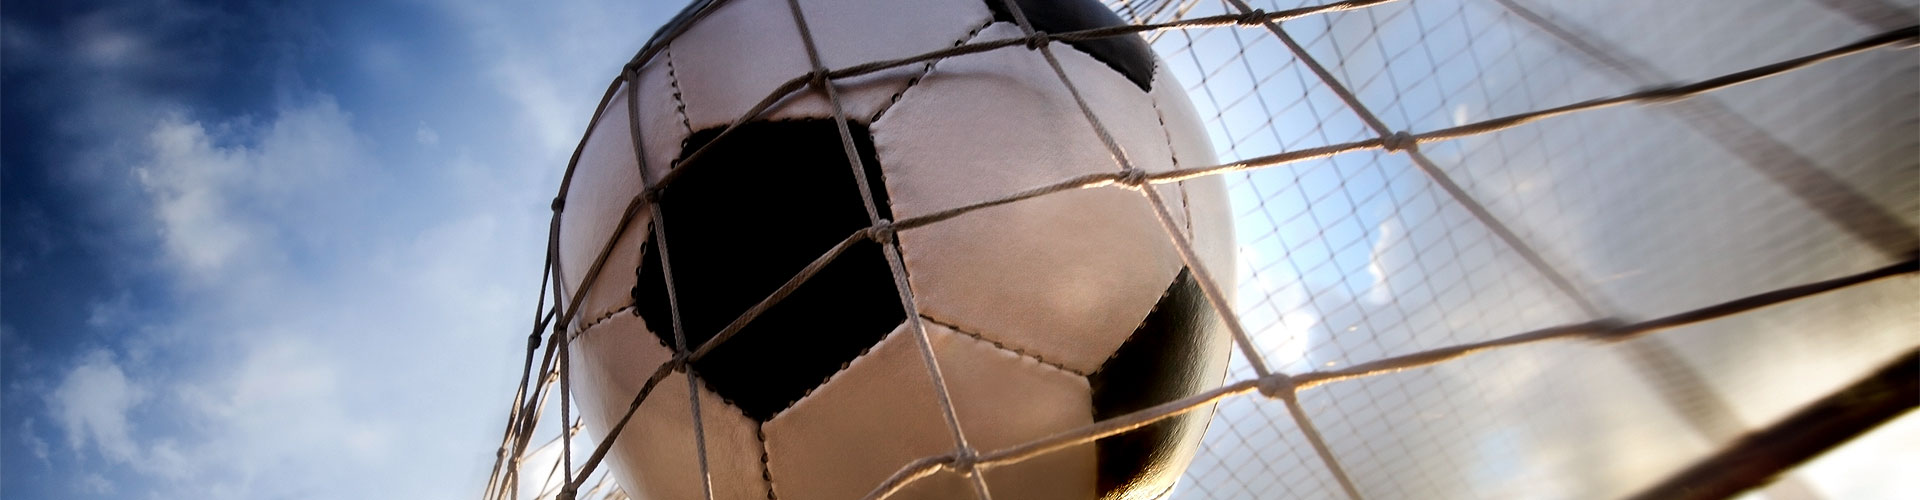 Ver la Eurocopa 2020 de fútbol en vivo en Maceira